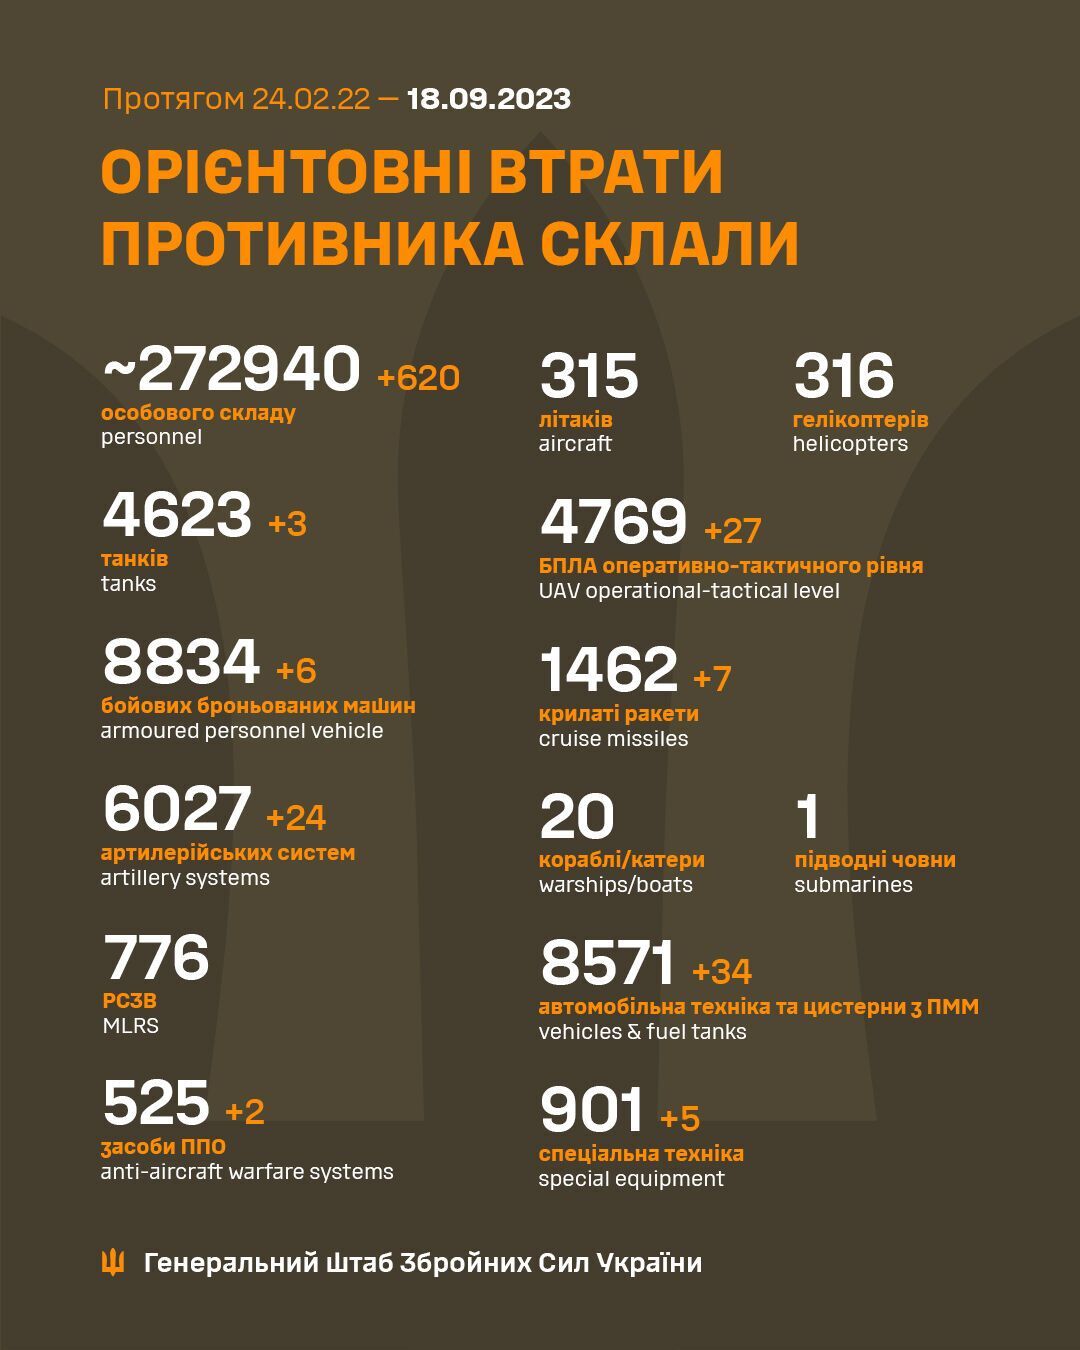 Защитники за сутки отминусовали 620 оккупантов и сбили 27 дронов РФ – Генштаб